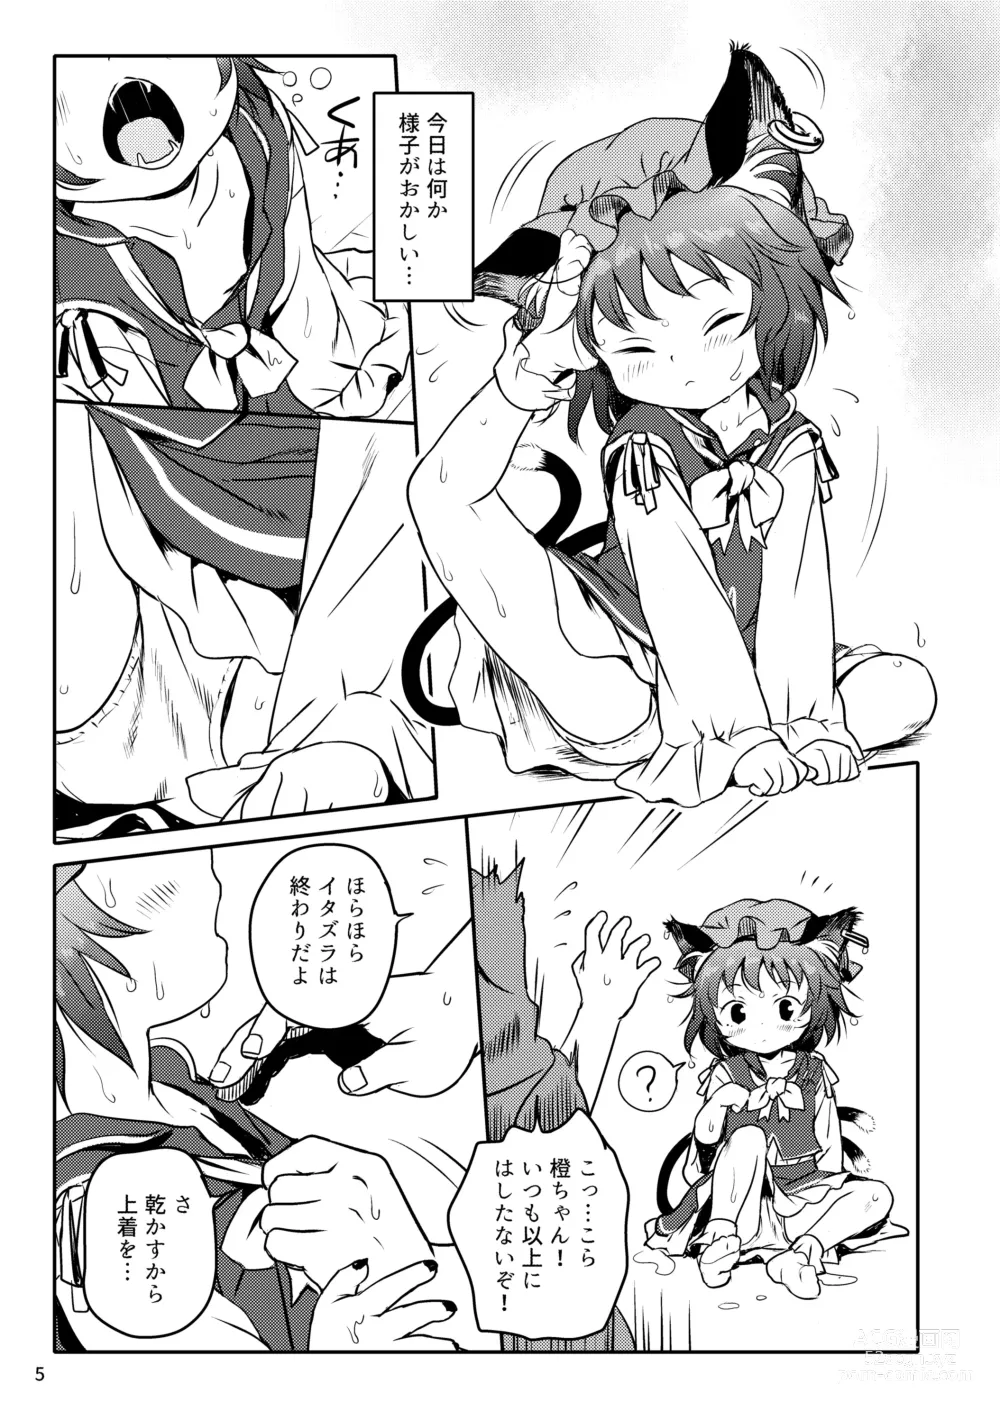 Page 5 of doujinshi Maseneko! Chen-chan!